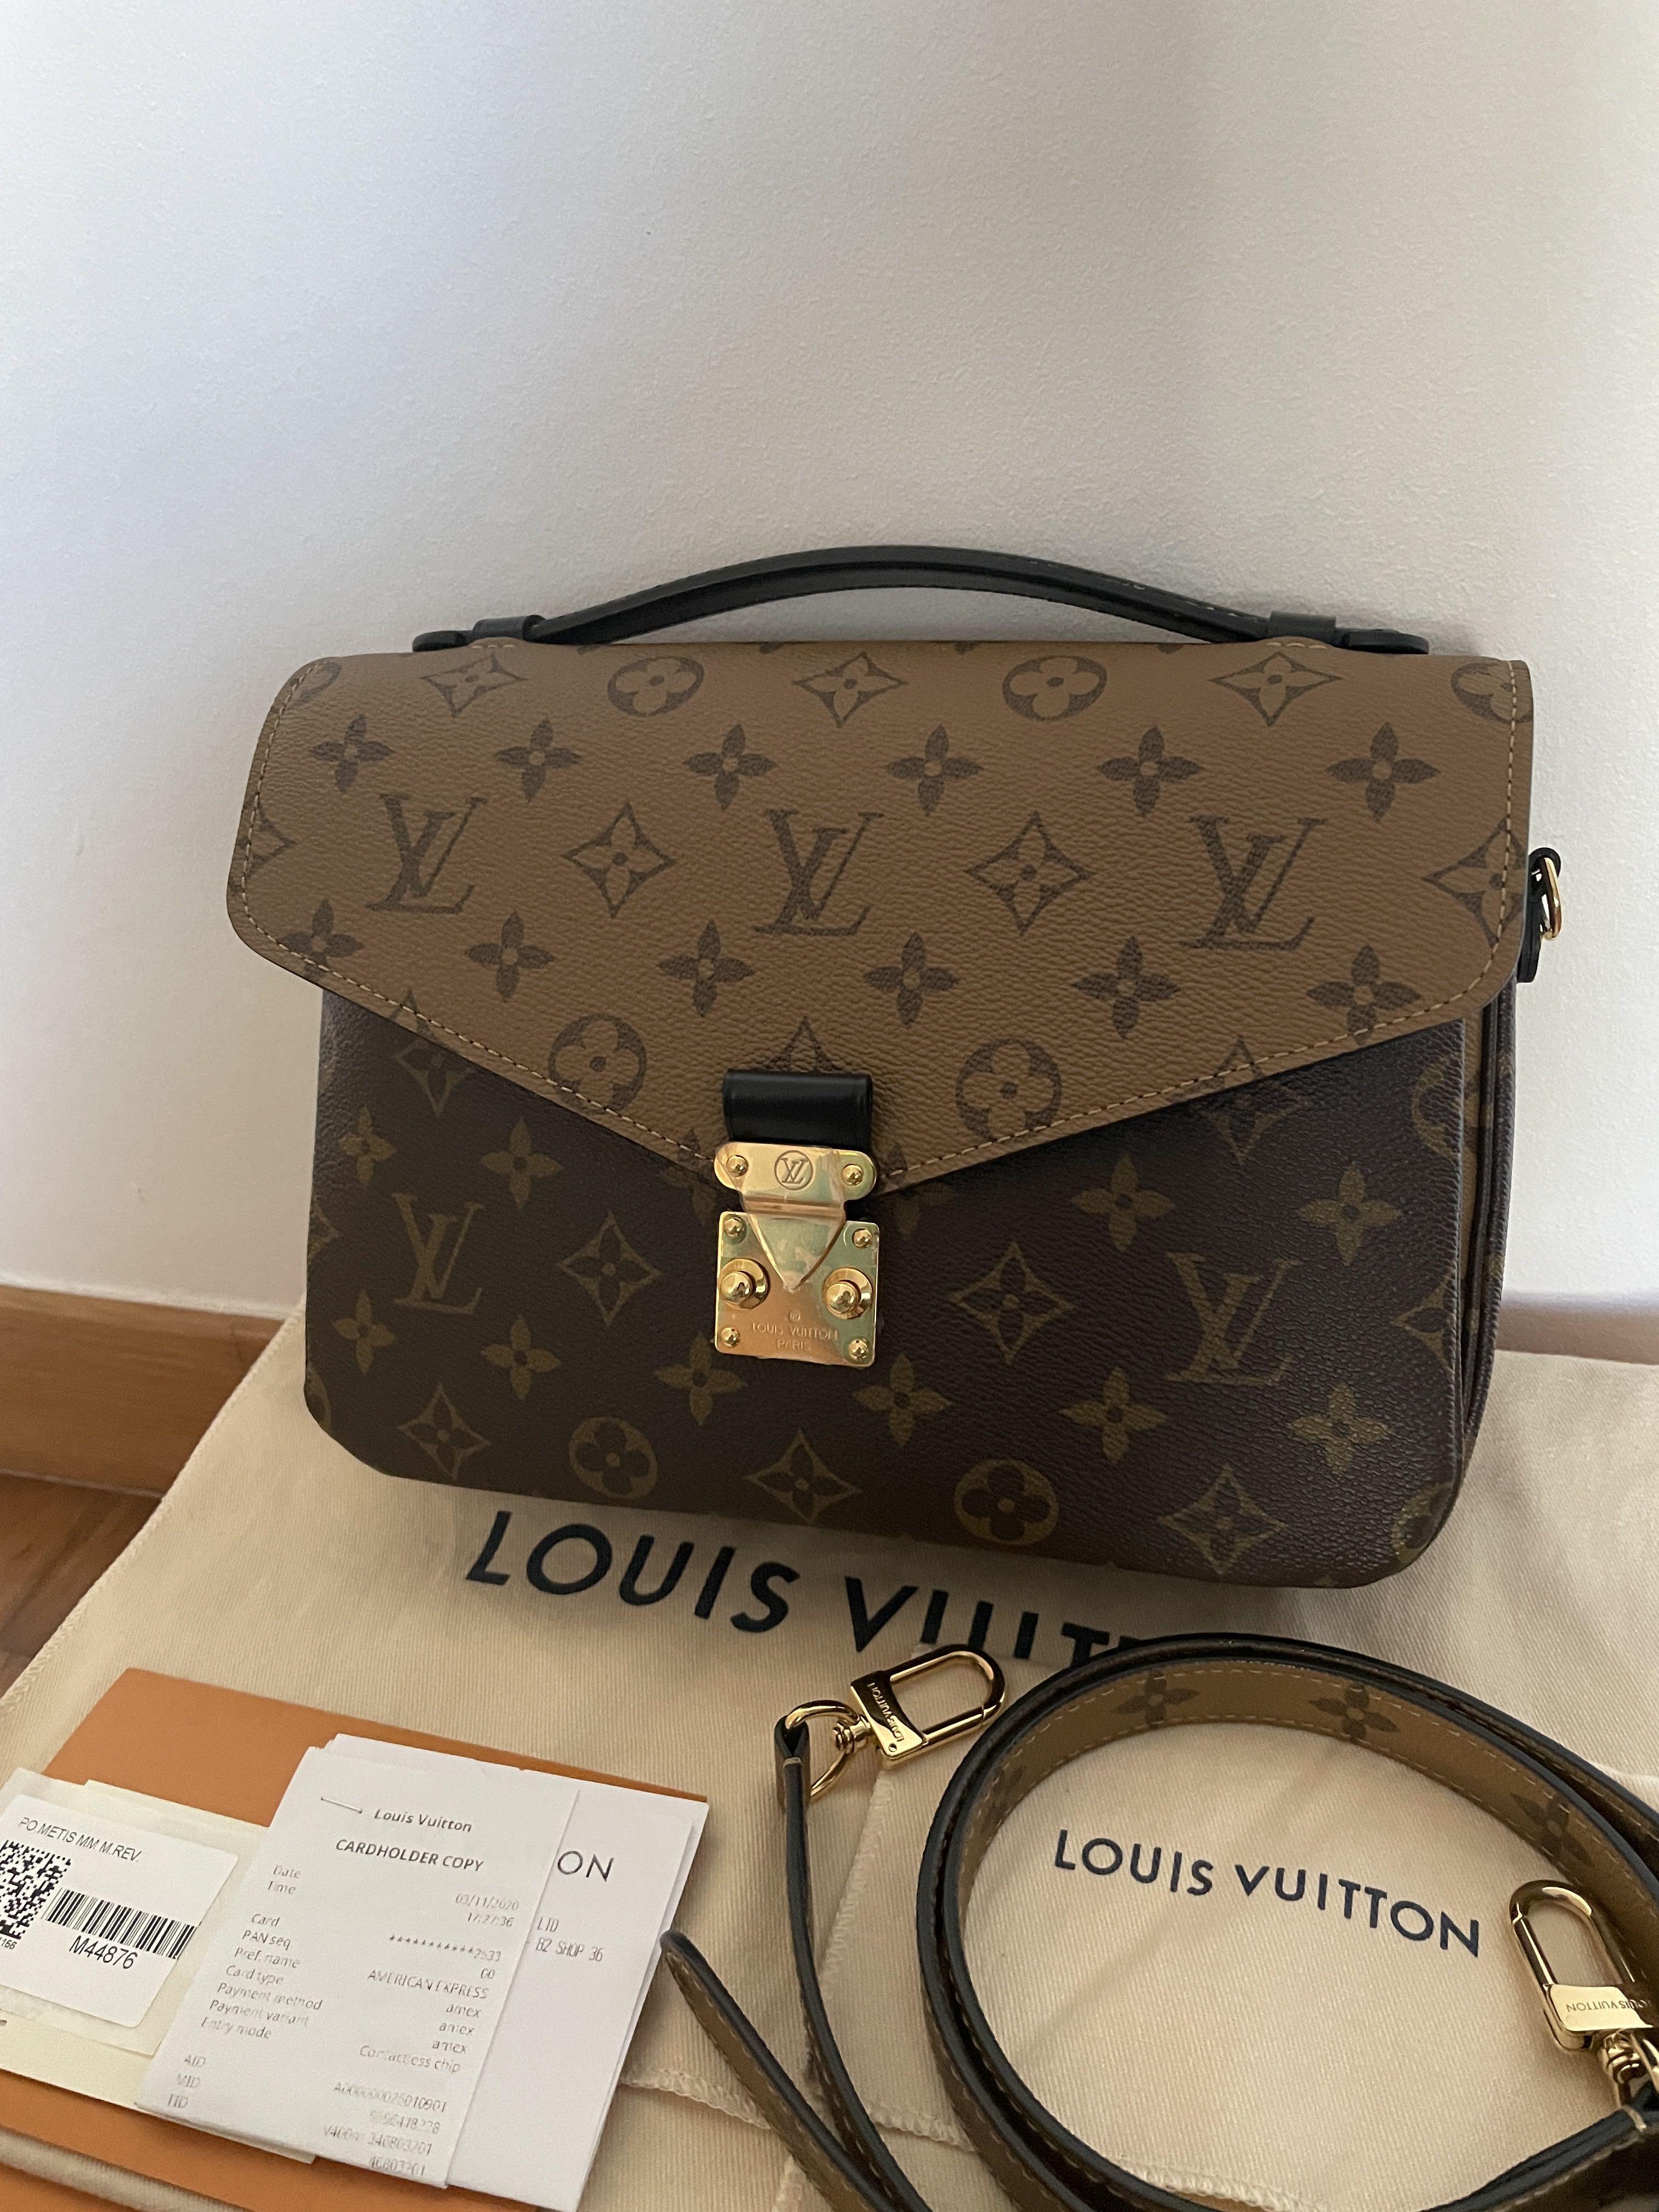 Unboxing the prettiest Louis Vuitton Bandeau! #louisvuitton